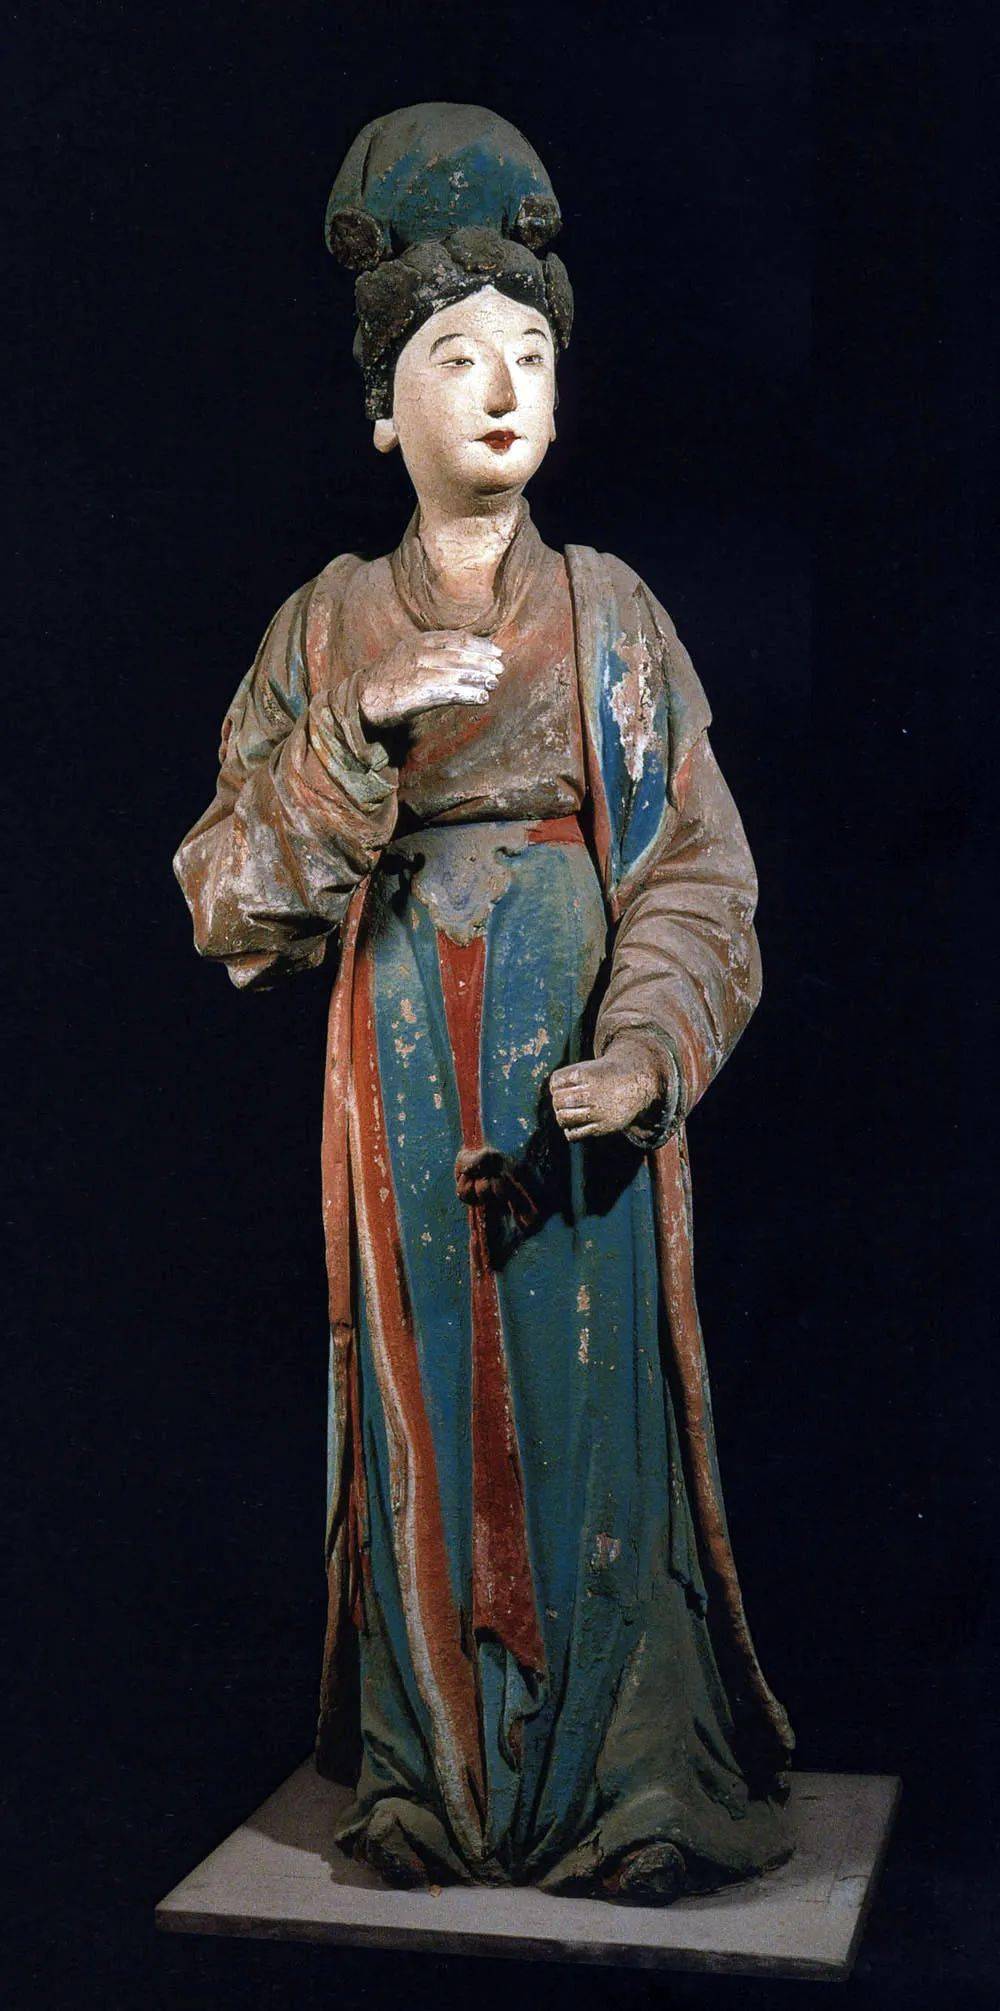 晋祠圣母殿彩塑:北宋现实主义雕塑的杰作